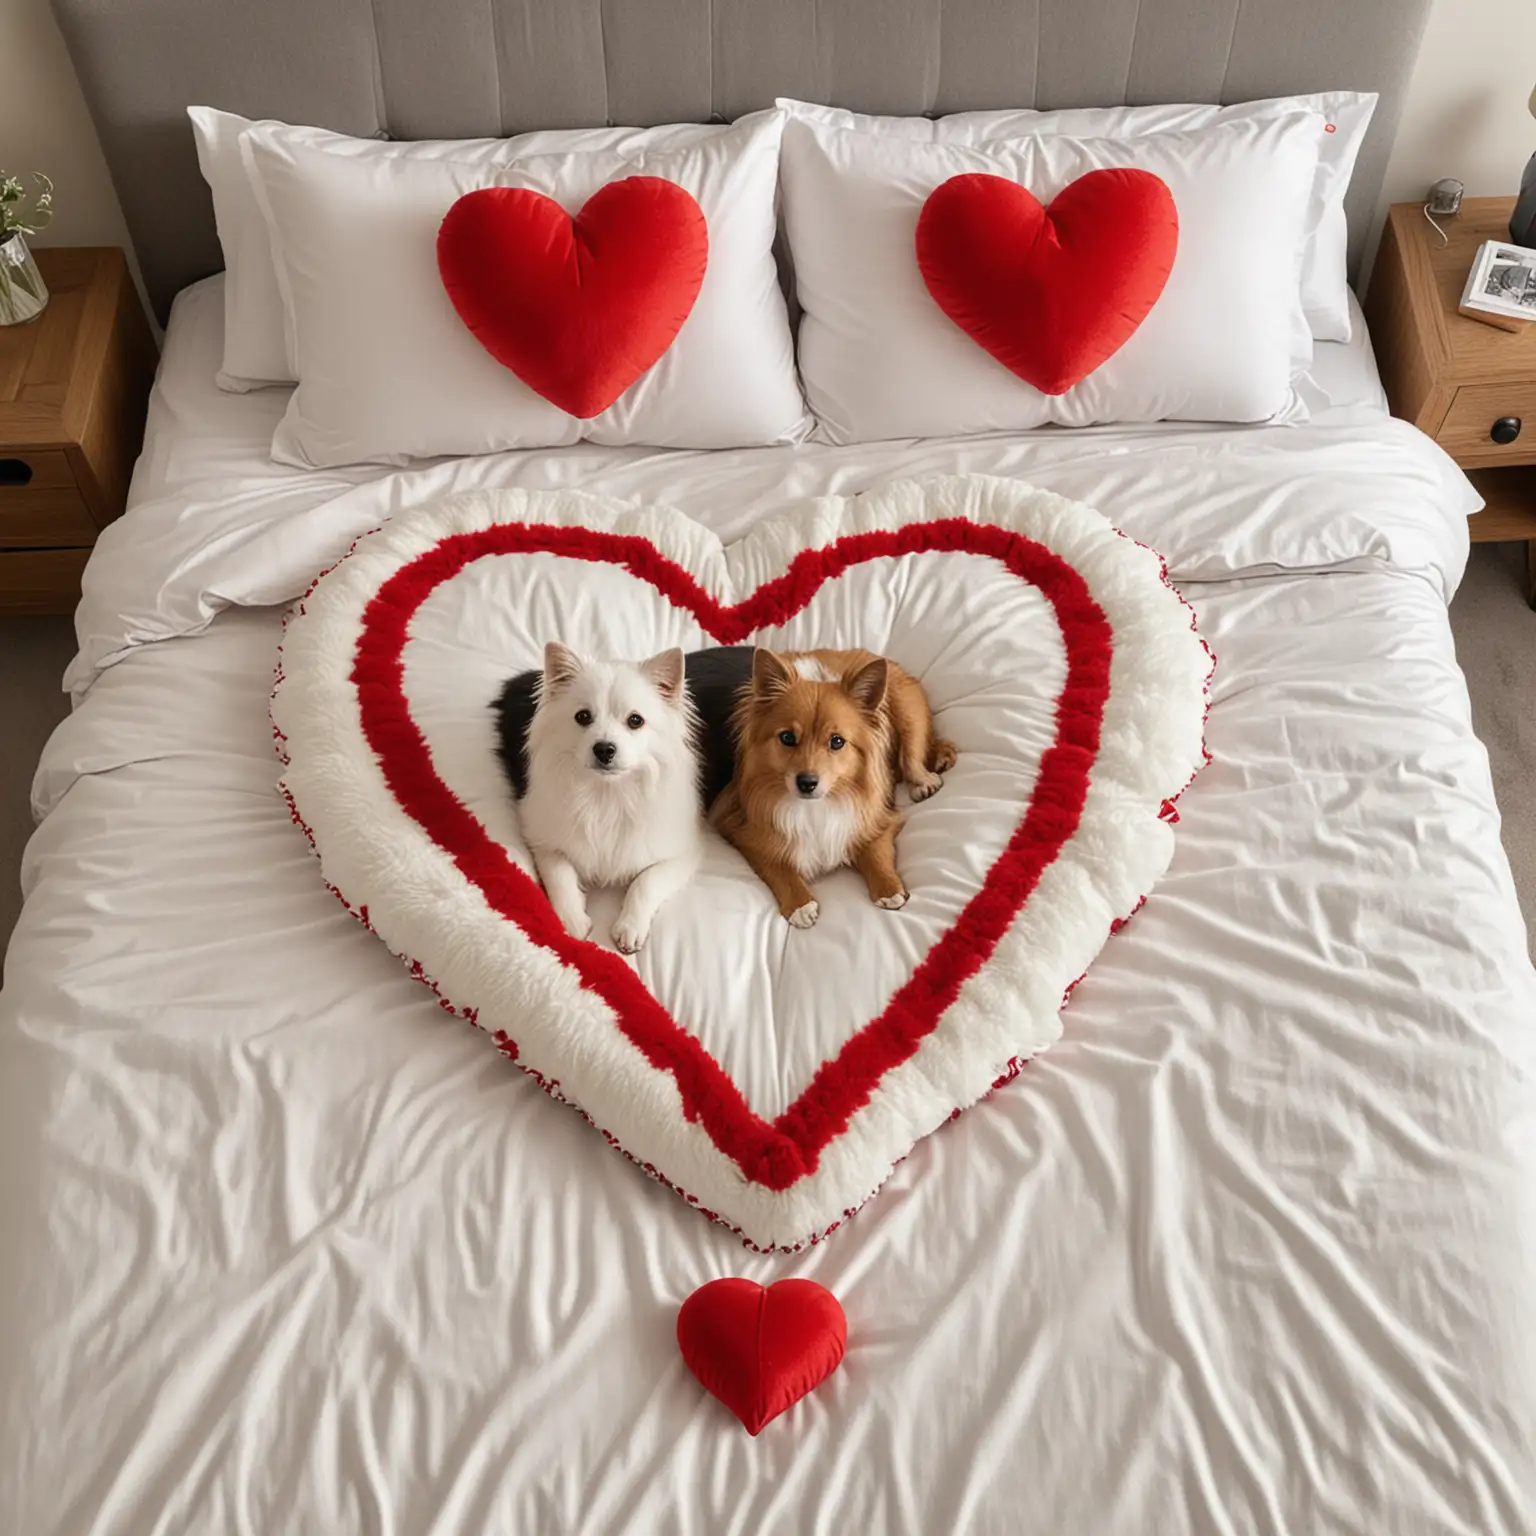 muéstrame un perro y un gato sobre una cama a lado y lado de un cojín rojo en forma de corazón